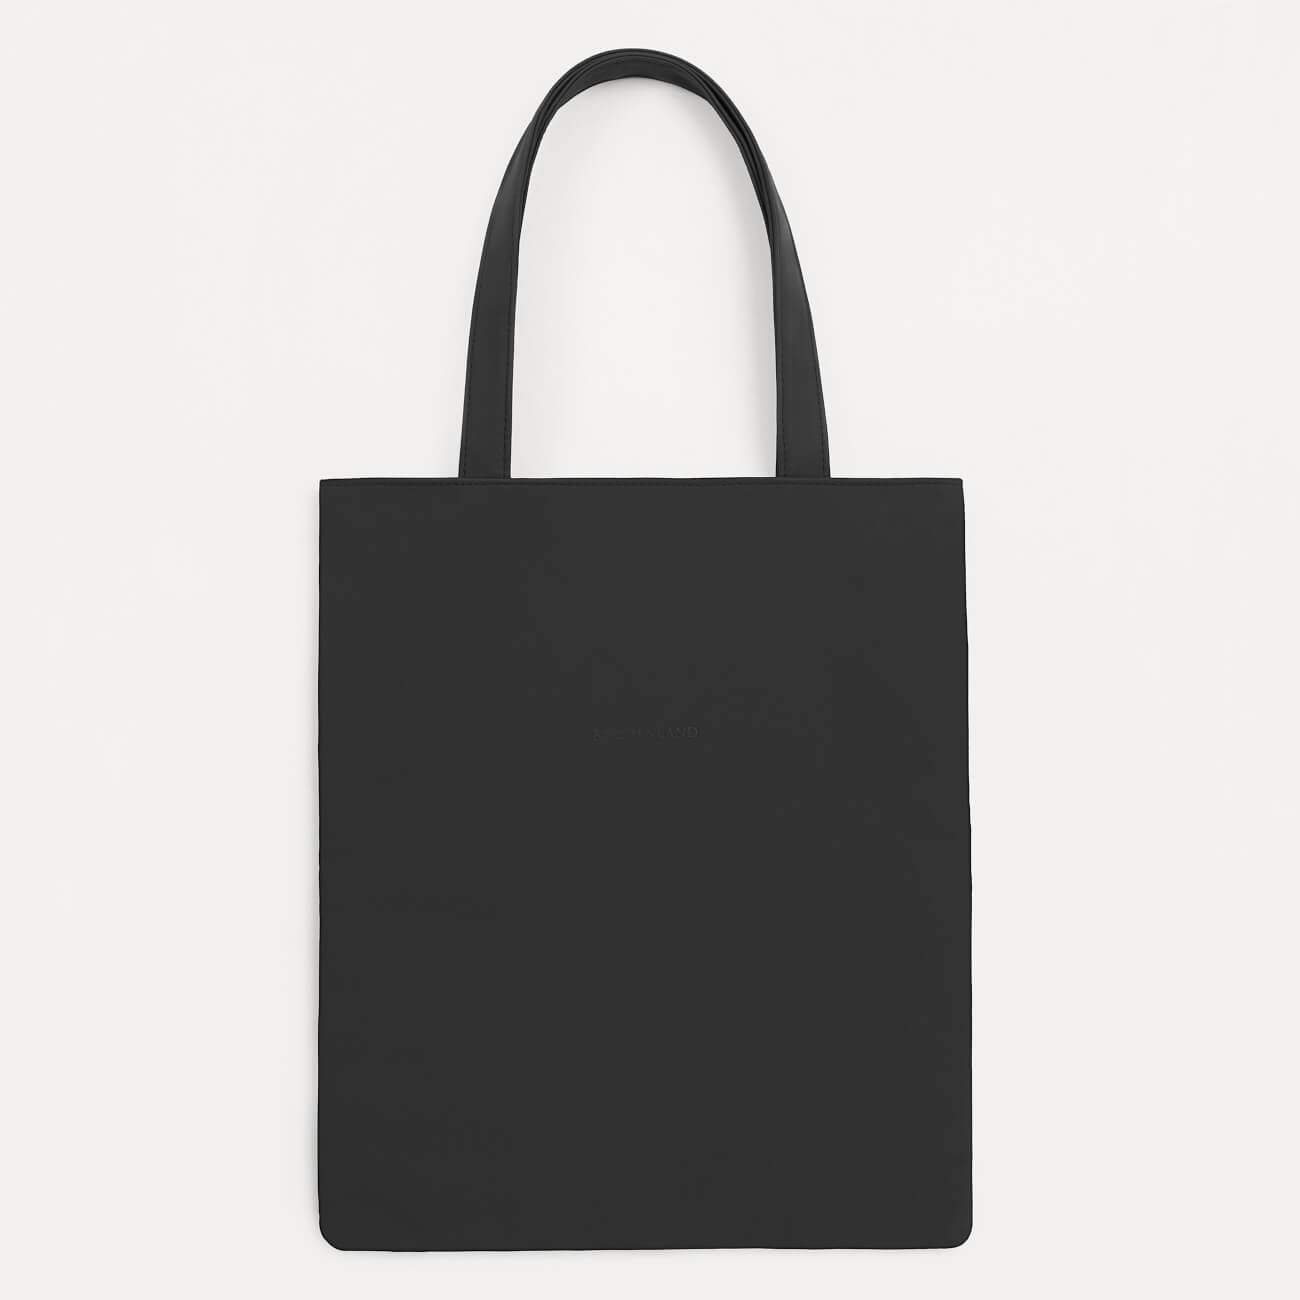 Сумка-шоппер, 37х32 см, полиуретан, черная, Krast сумка шопер счастливый человек 35 0 5 40 принт с блестками без подклада черная